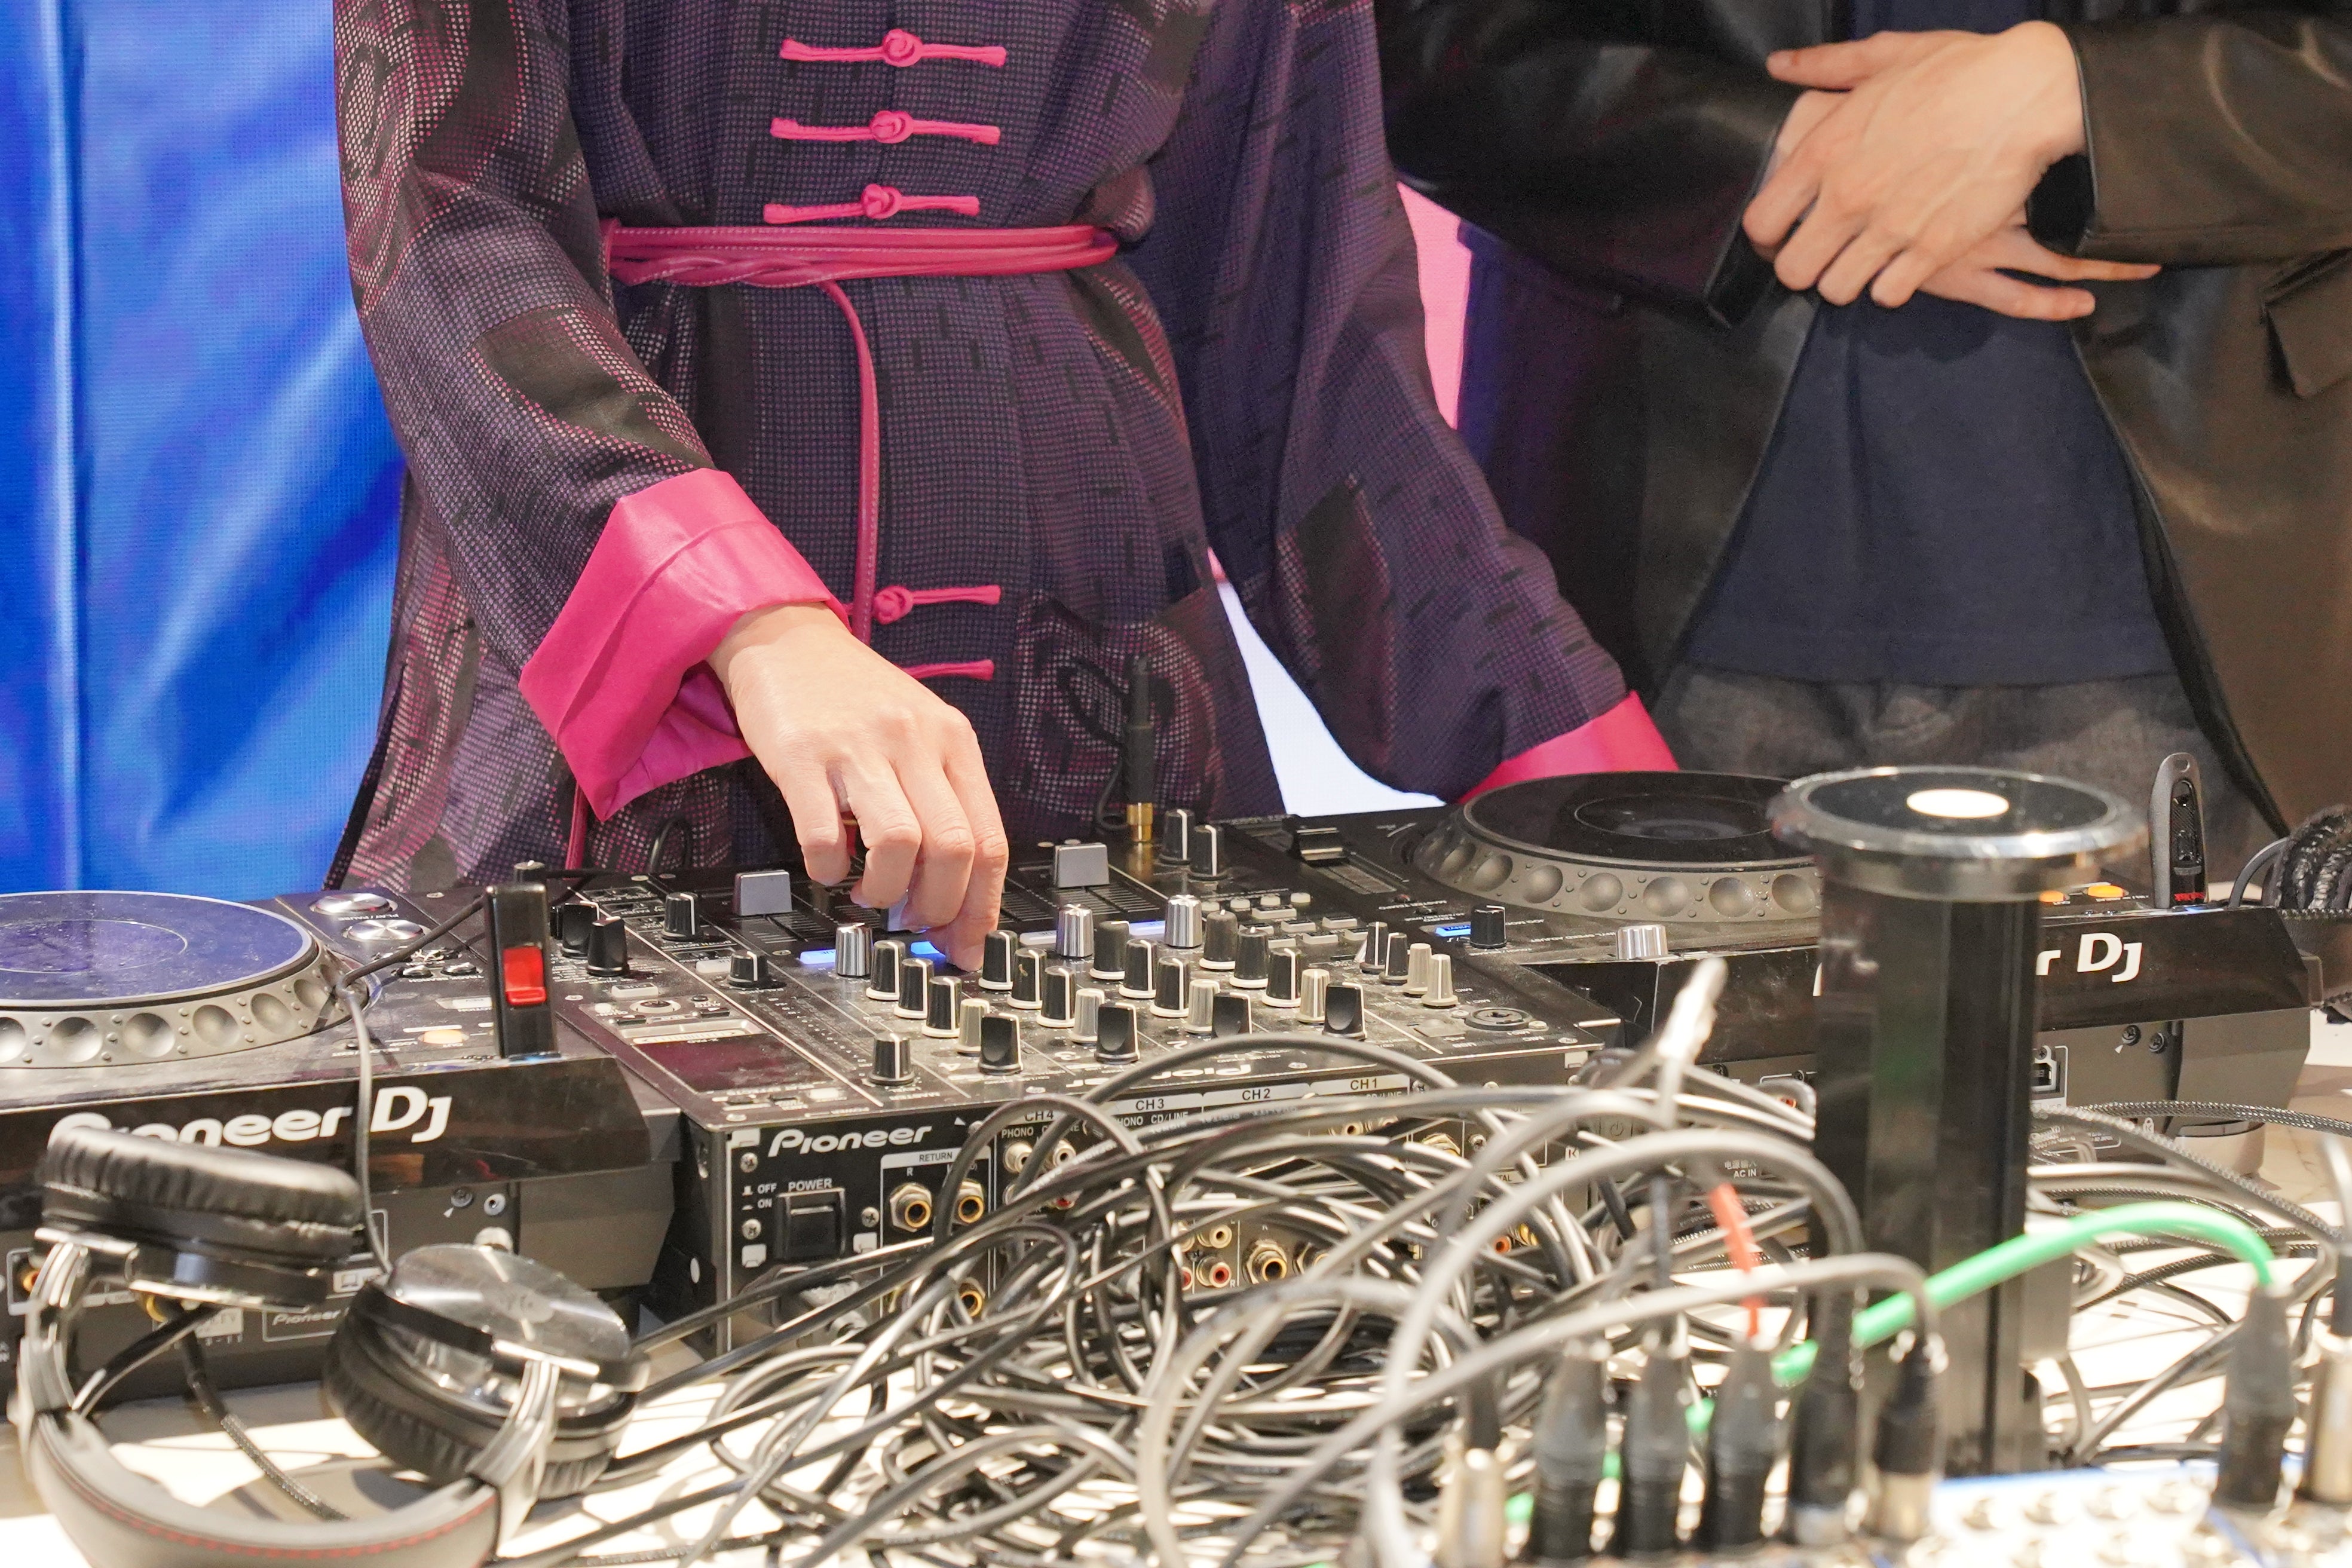 【DJ體驗課程】星級DJ導師教授打碟技巧